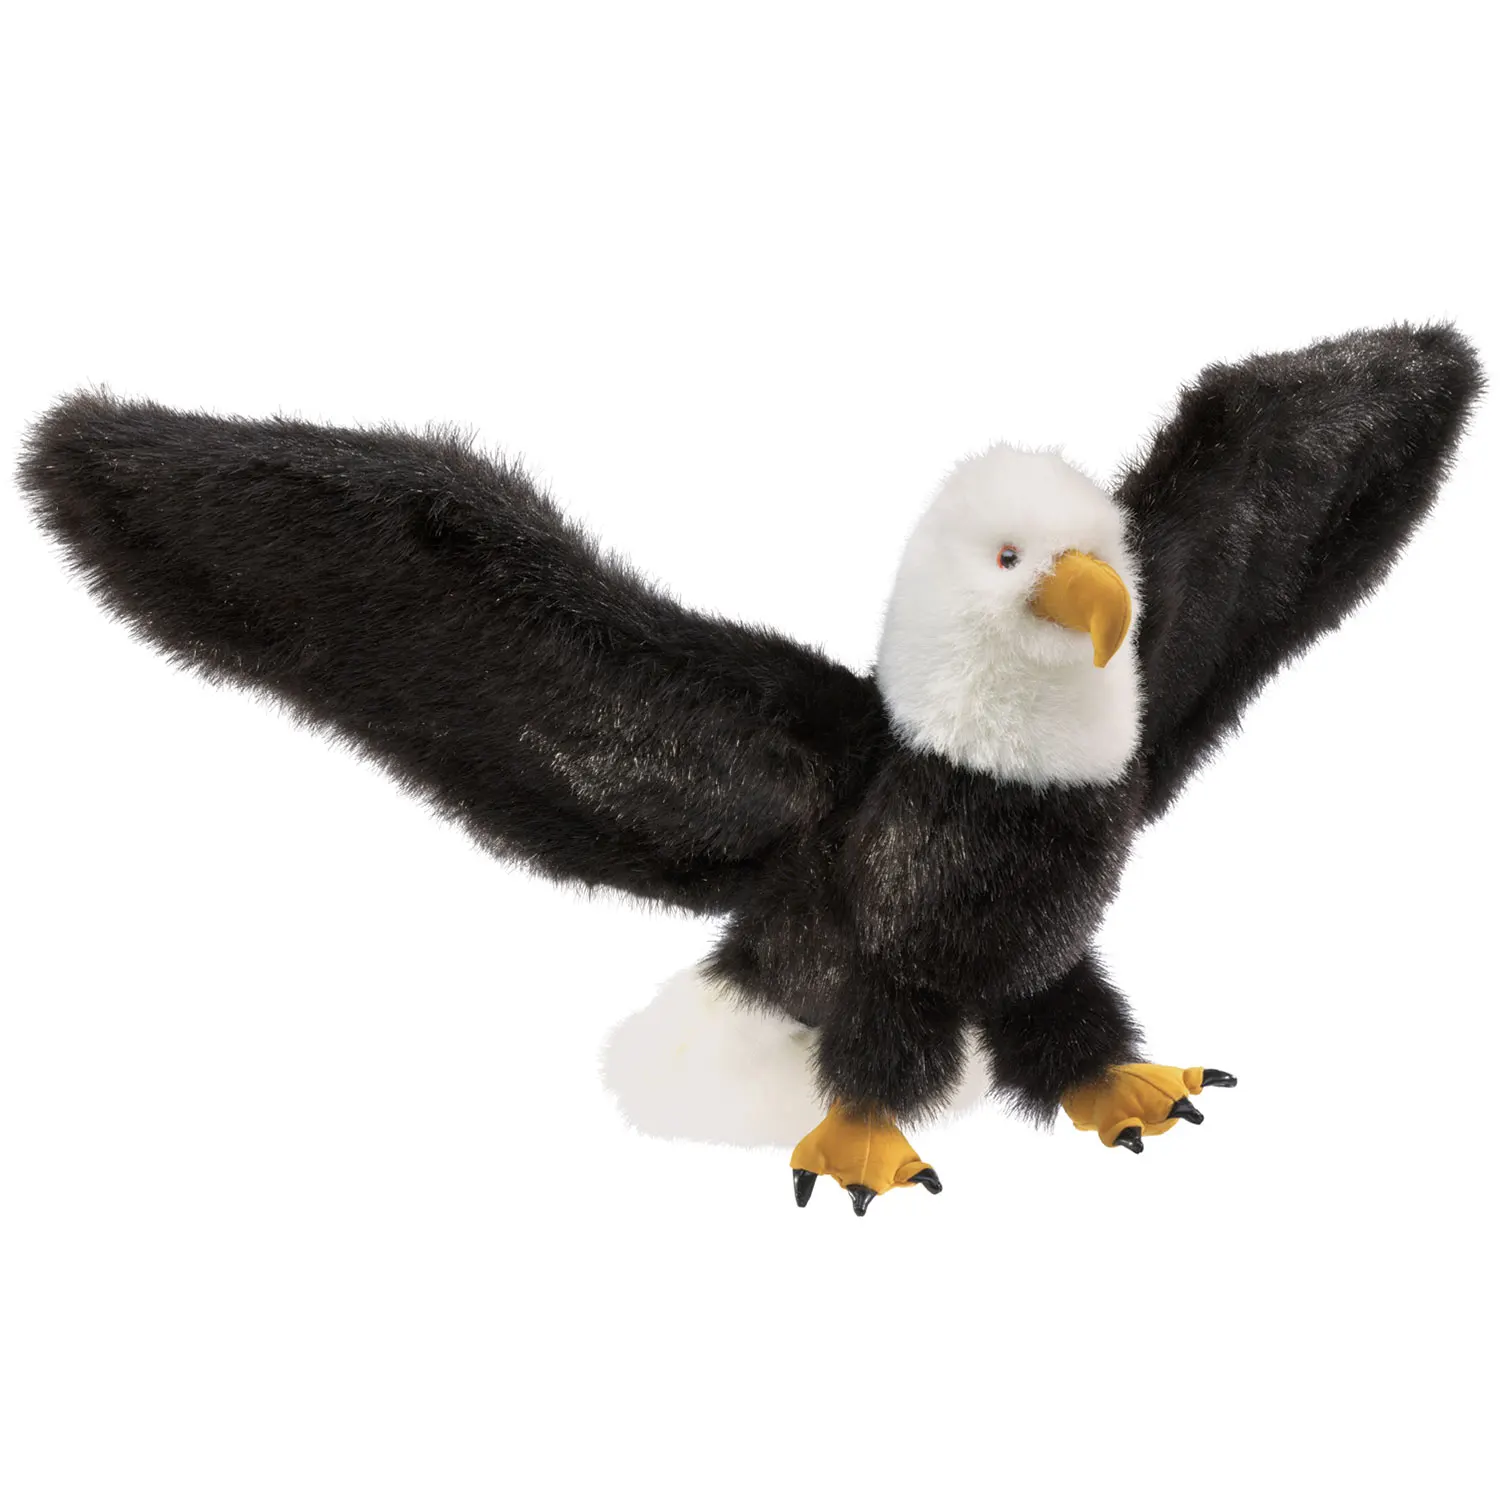 Weißkopfseeadler / Eagle